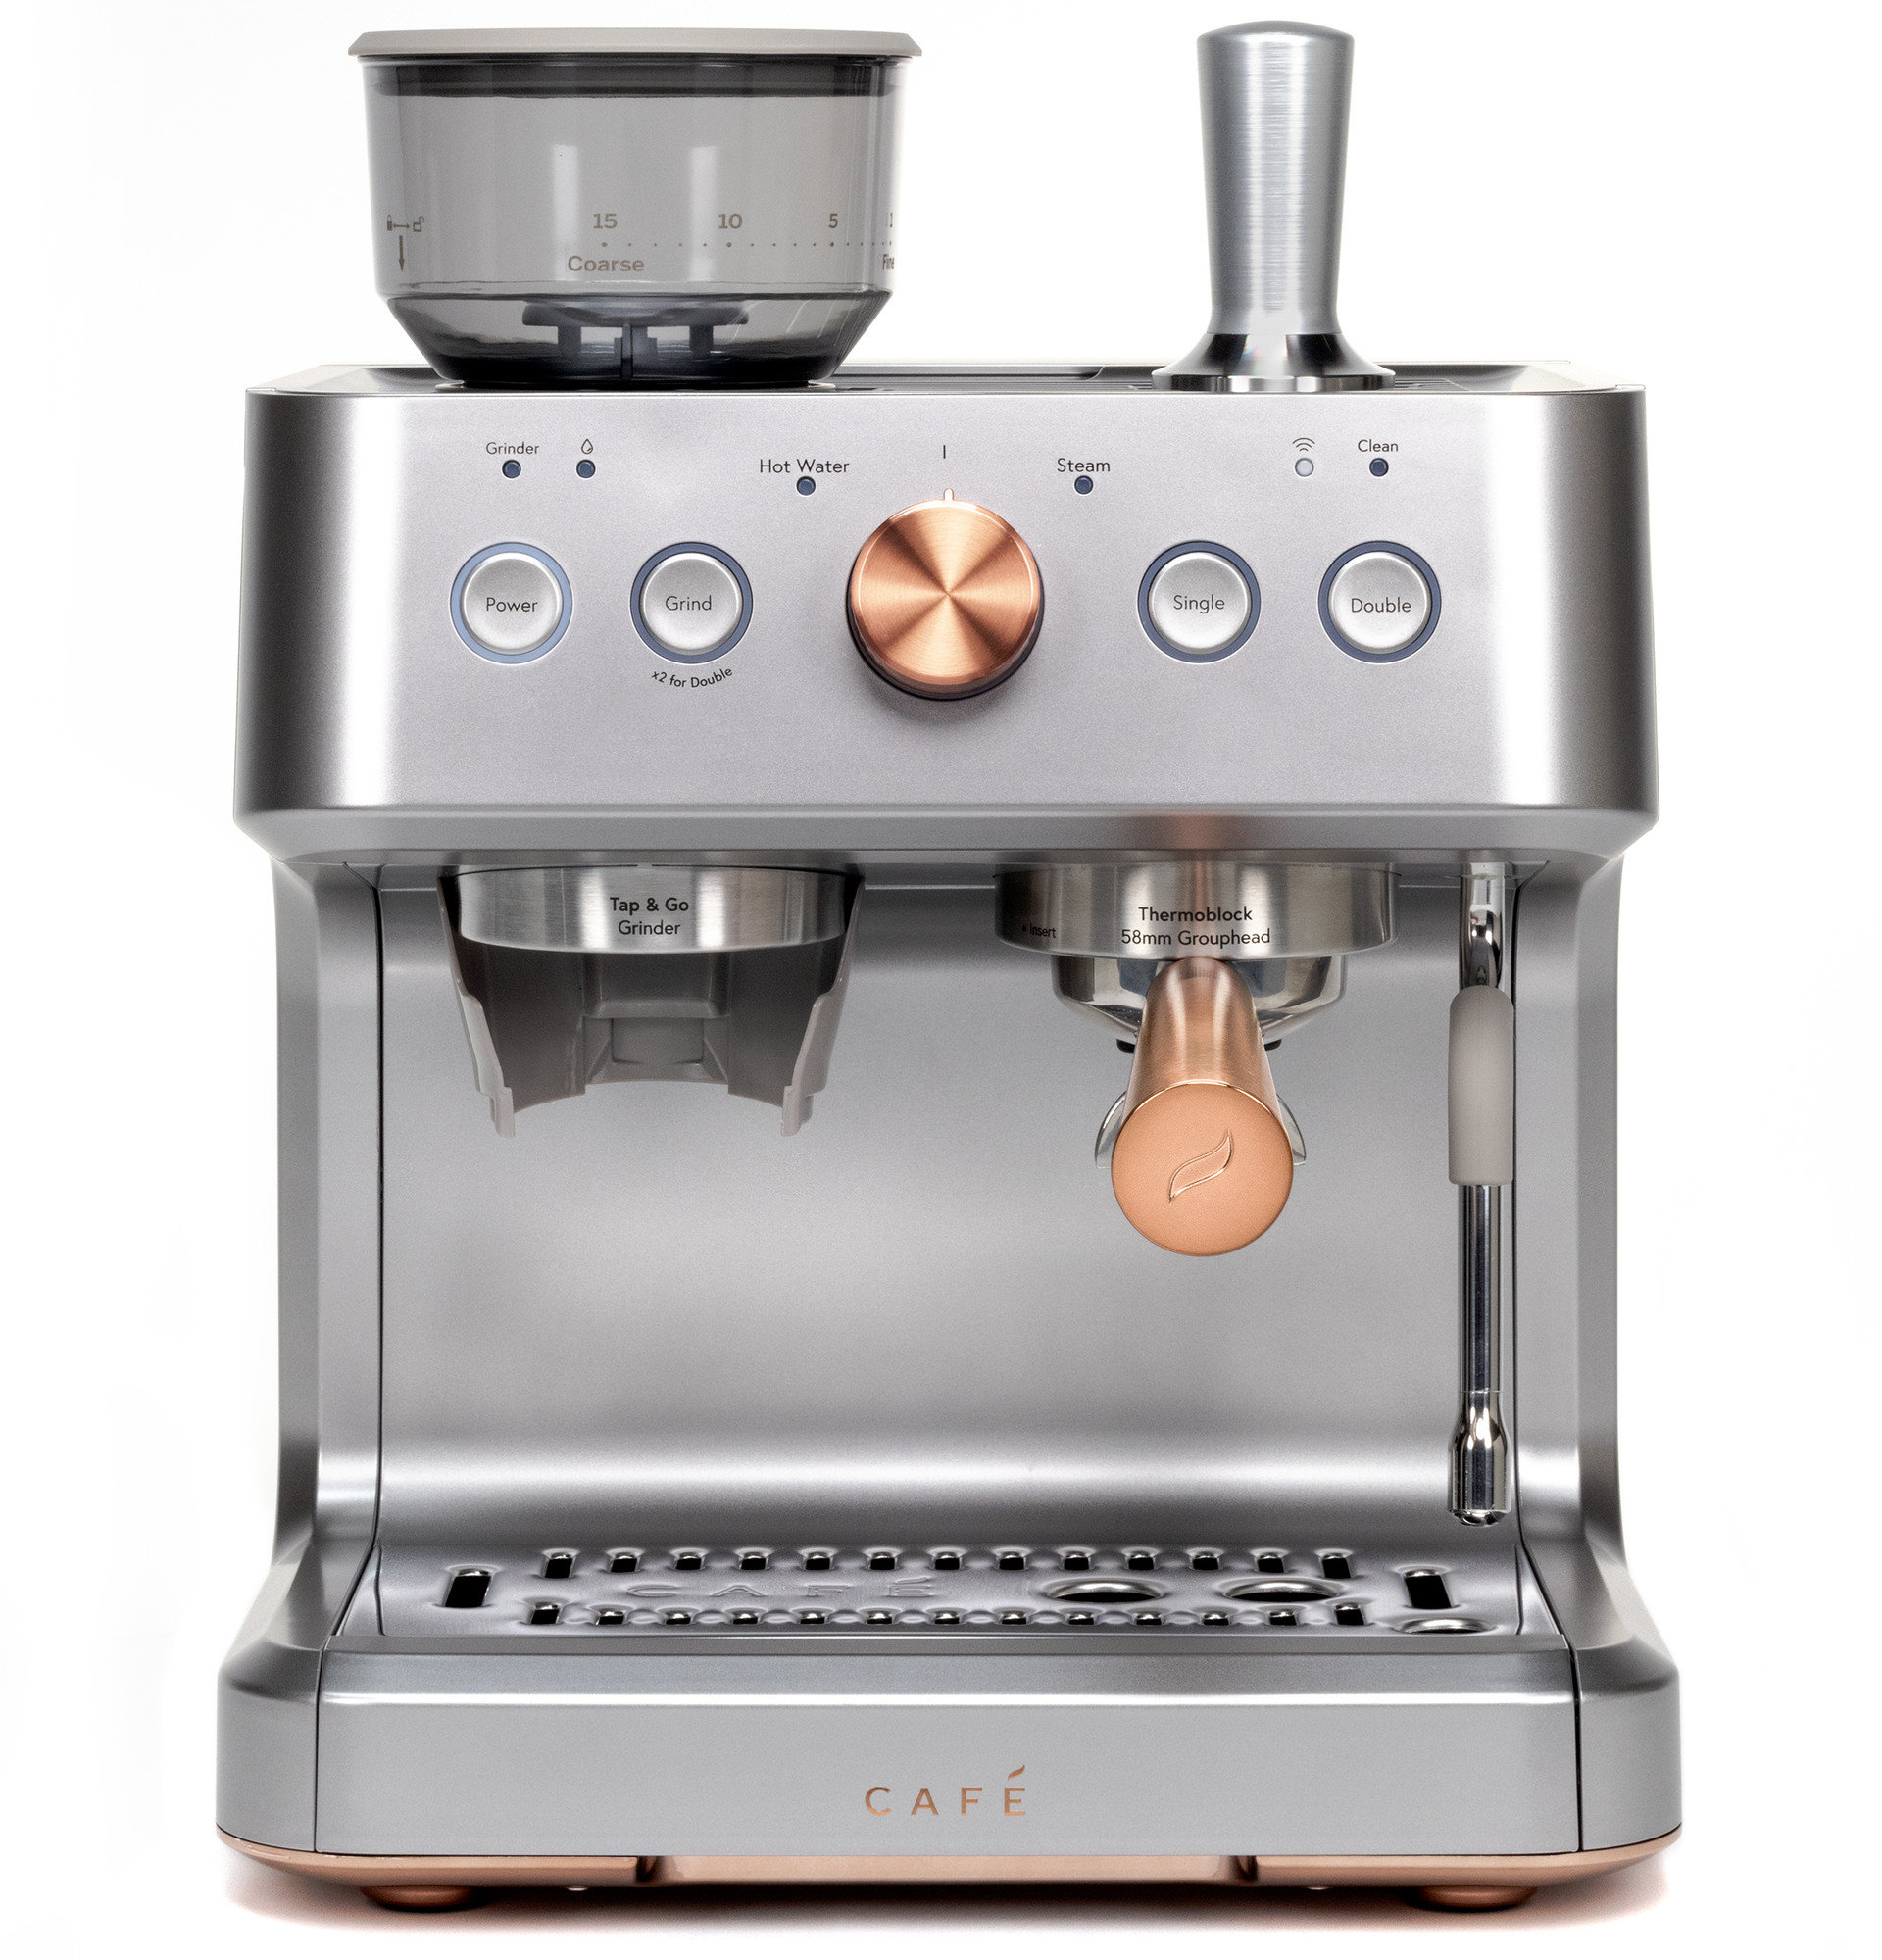 Semi-Automatic Espresso Machine and Automatic Milk Frother Attachment